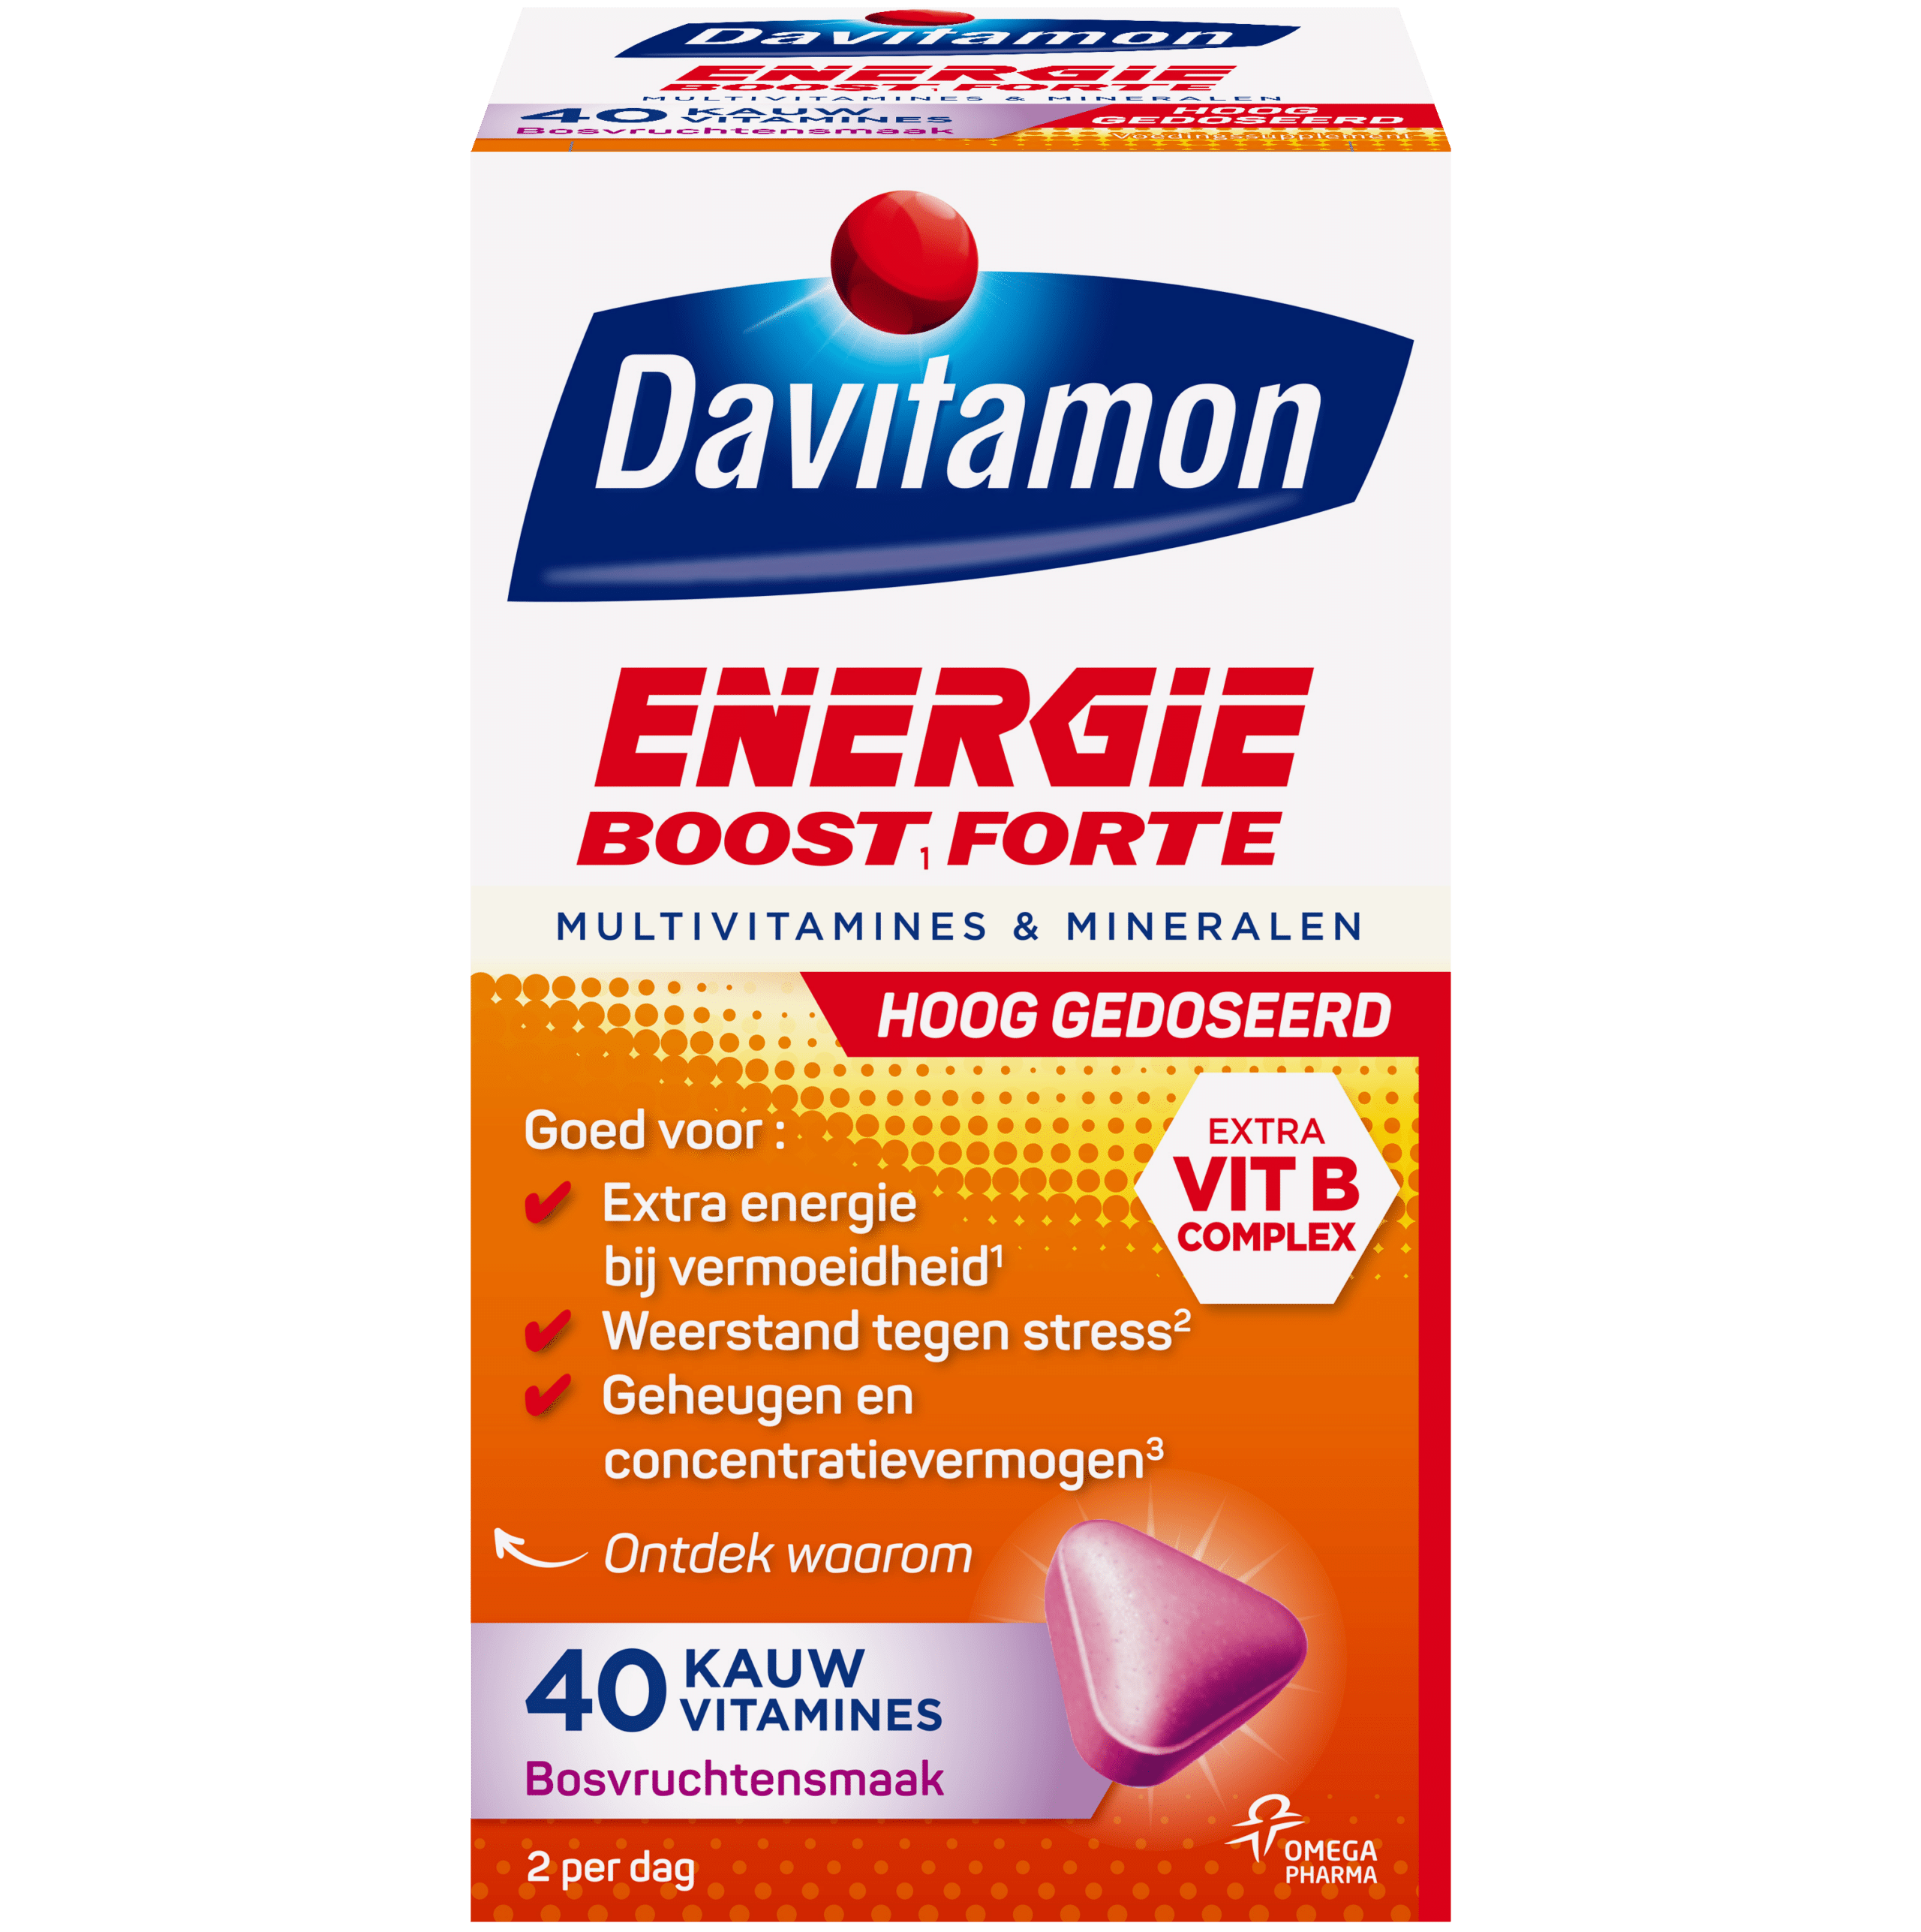 Davitamon Energie Forte: voor energie